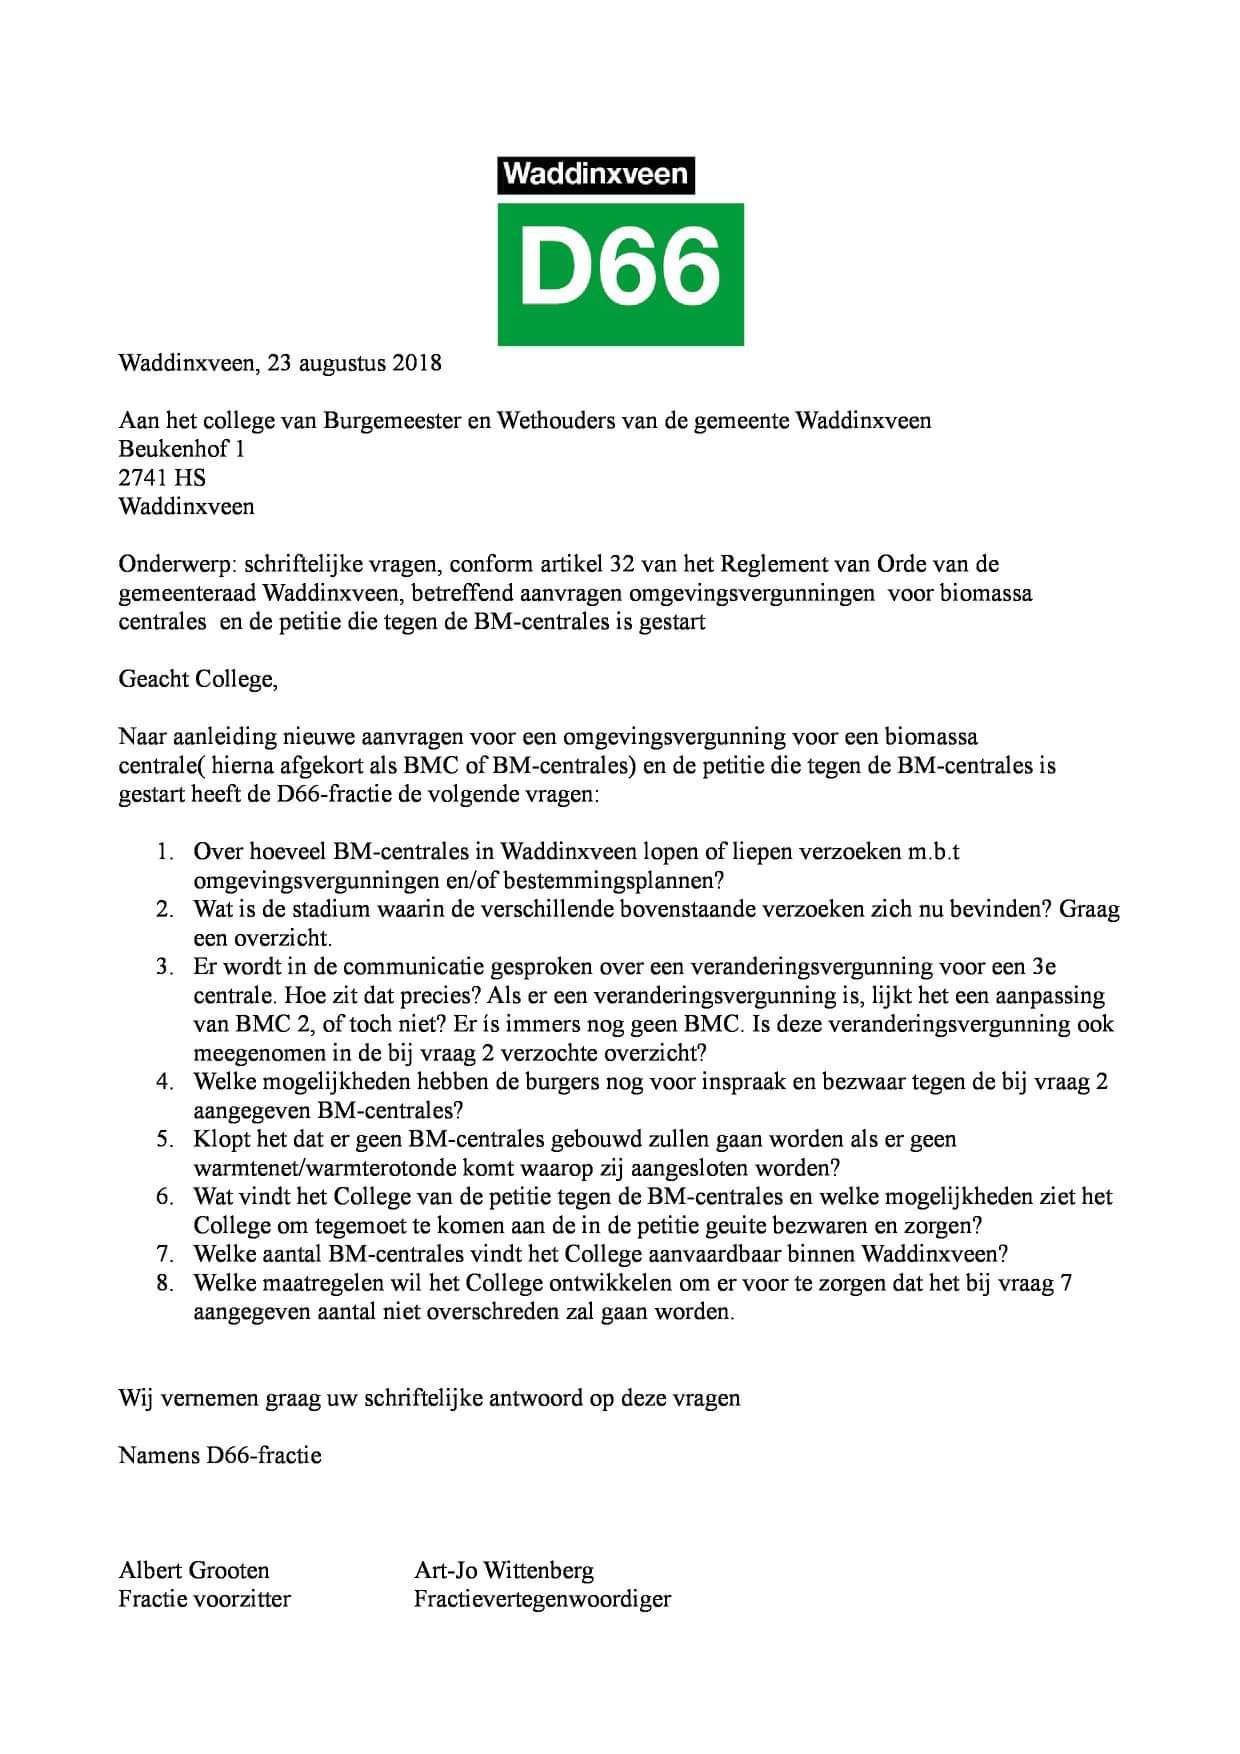 D66 Waddinxveen stelt schriftelijke vragen naar aanleiding van de plannen voor de Biomassacentrales aan 2e Bloksweg en 6e Tochtweg